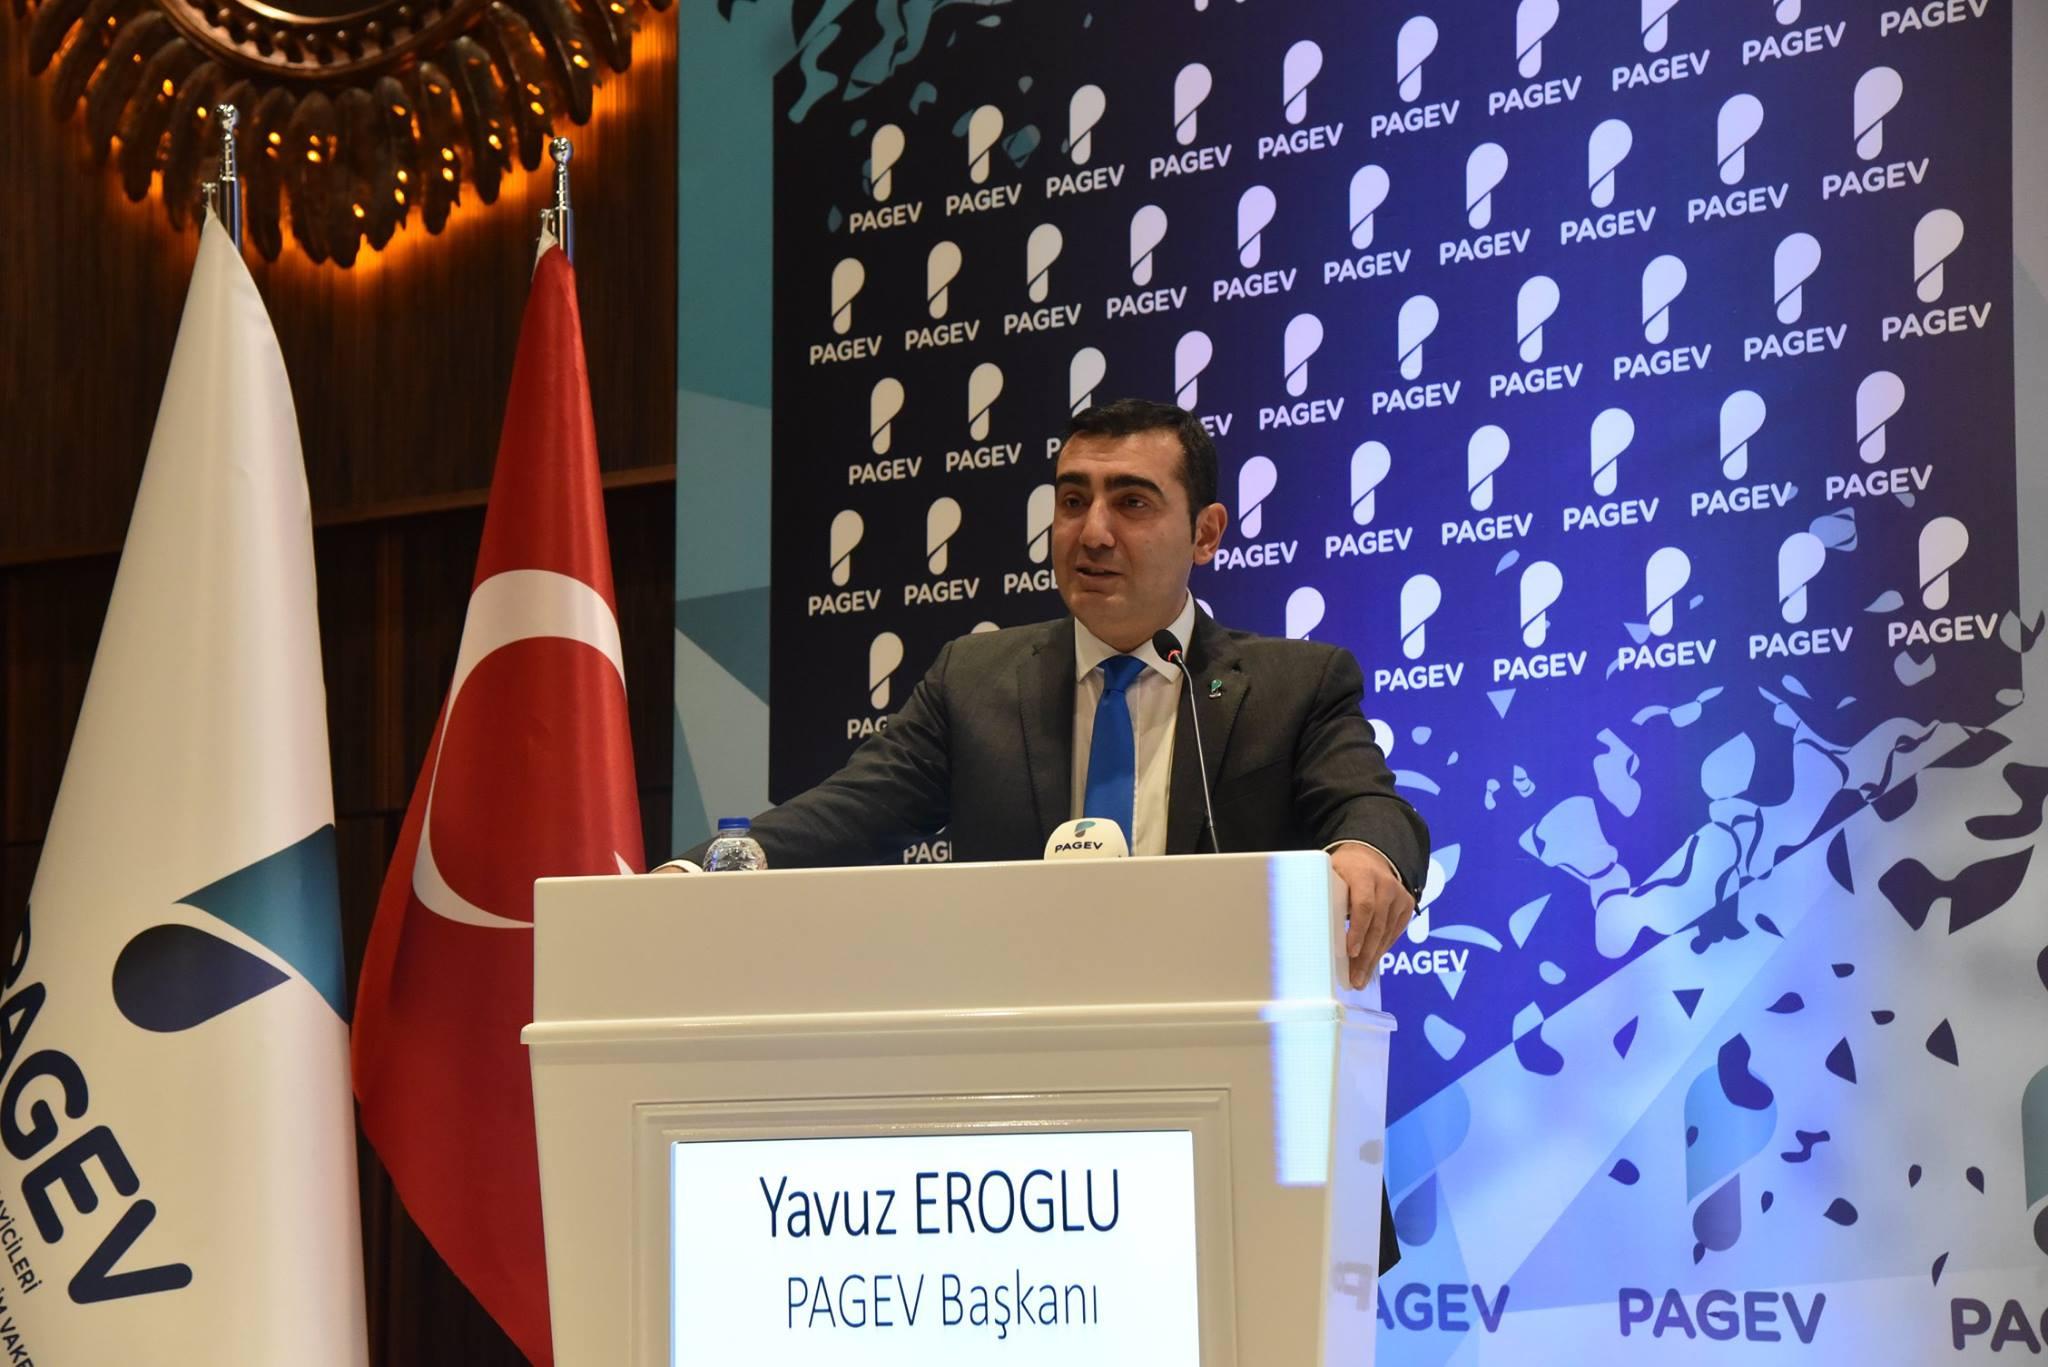 PAGEV, Ankara Ücretli Plastik Poşet Uygulaması Toplantısı